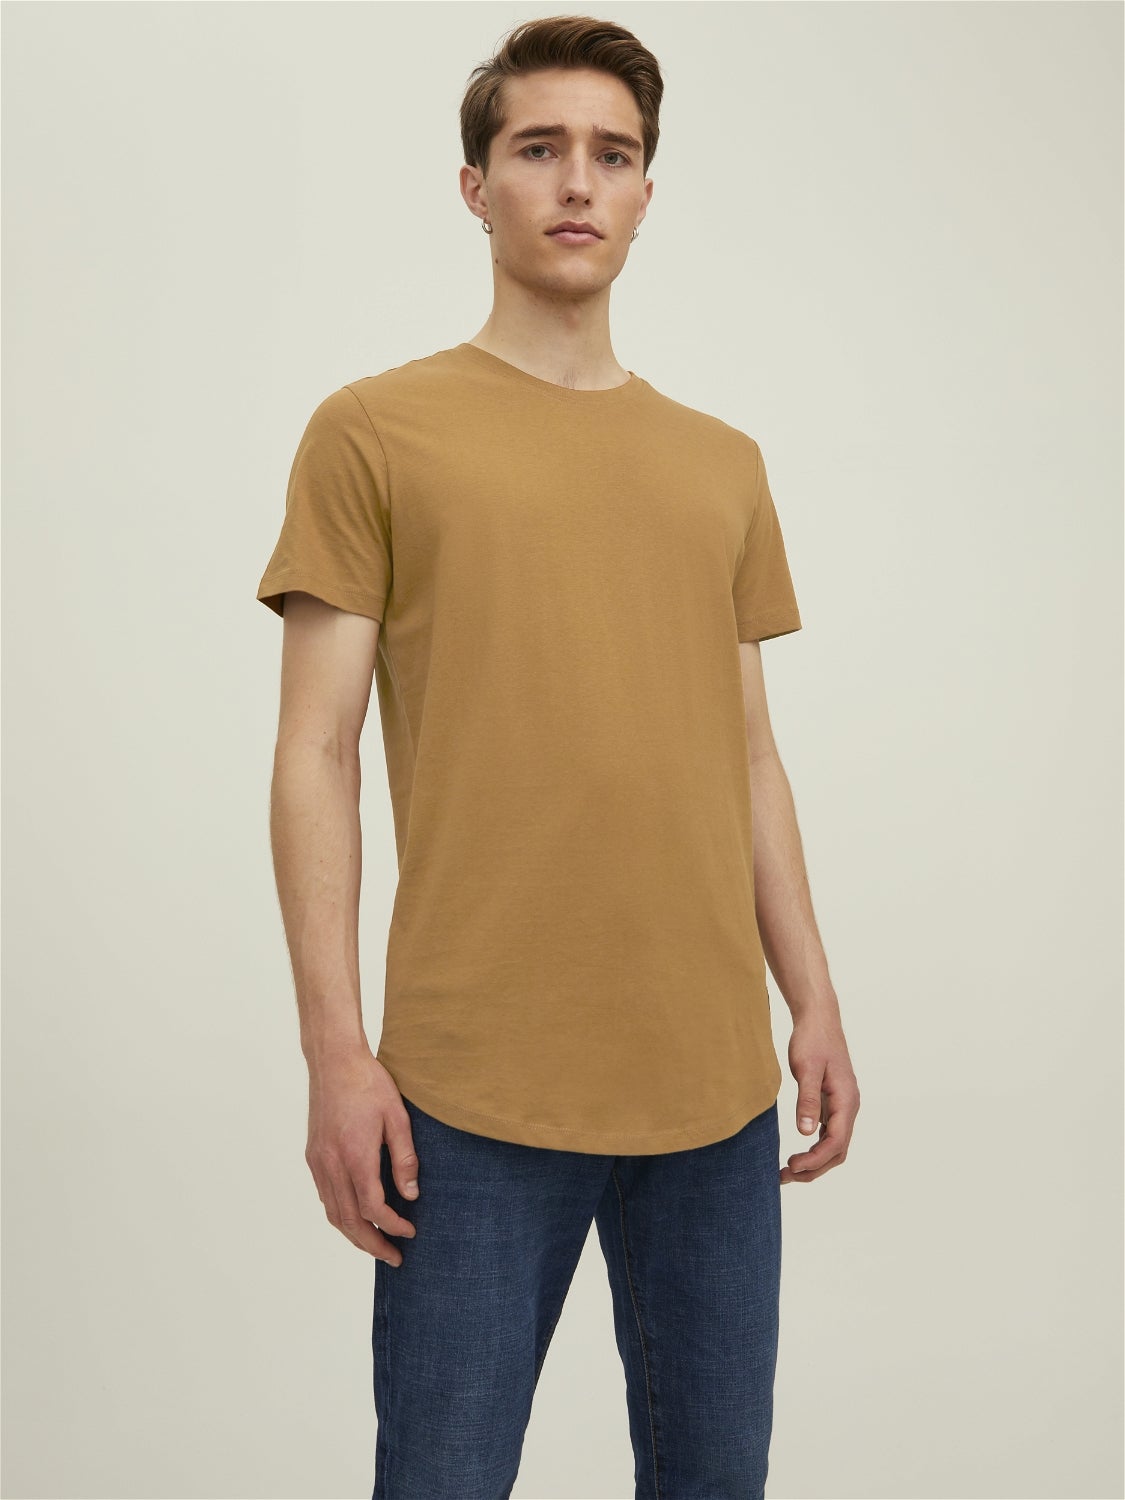 Zara T-Shirt Rabatt 56 % DAMEN Hemden & T-Shirts T-Shirt Basisch Braun M 